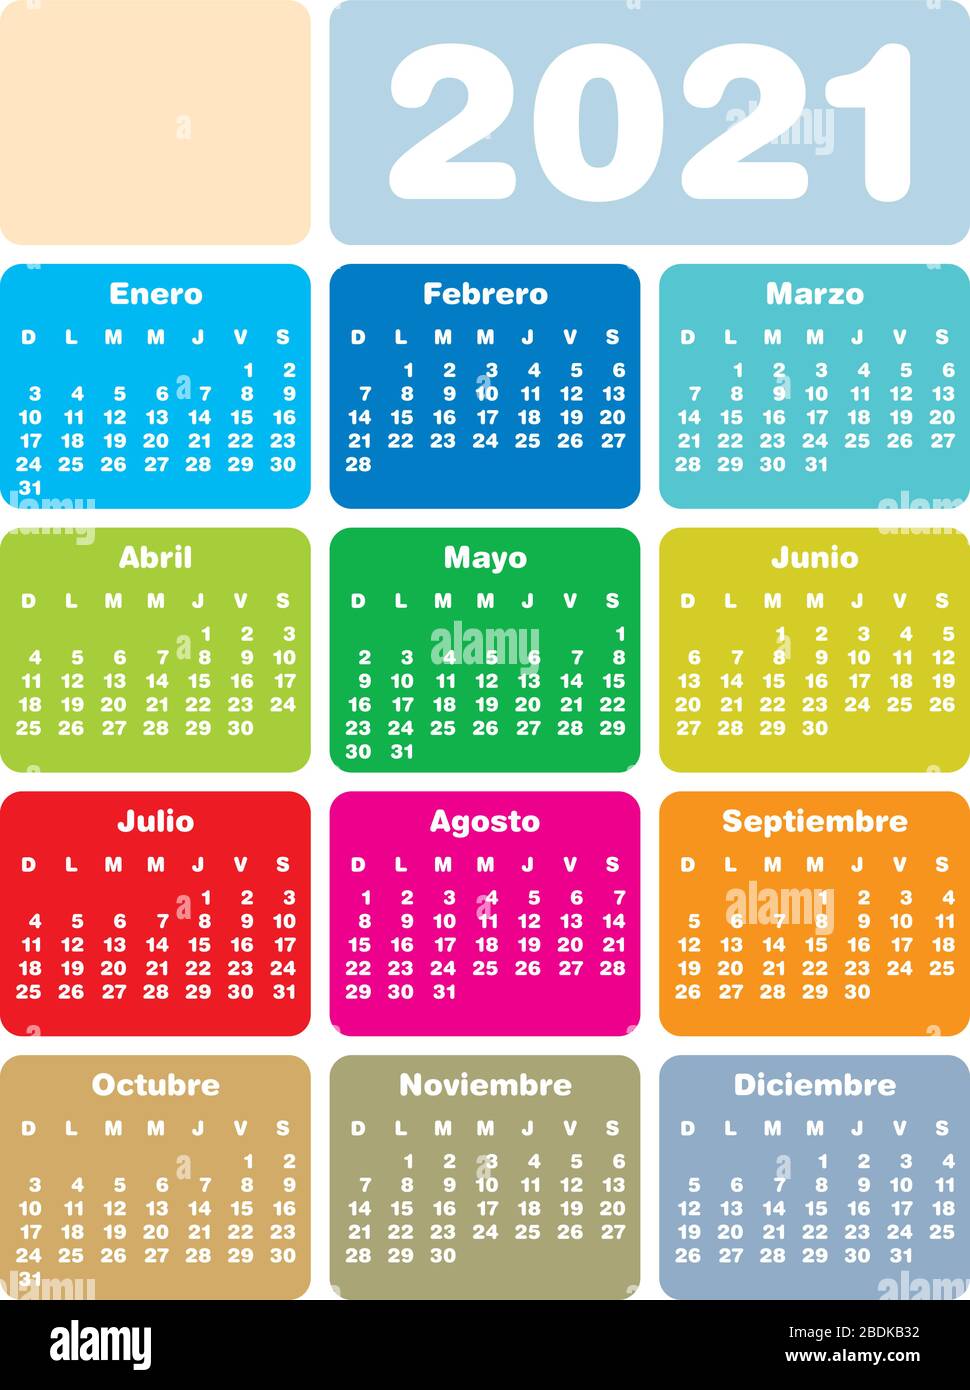 Calendario En Castellano 2021 Imágenes Recortadas De Stock Alamy 